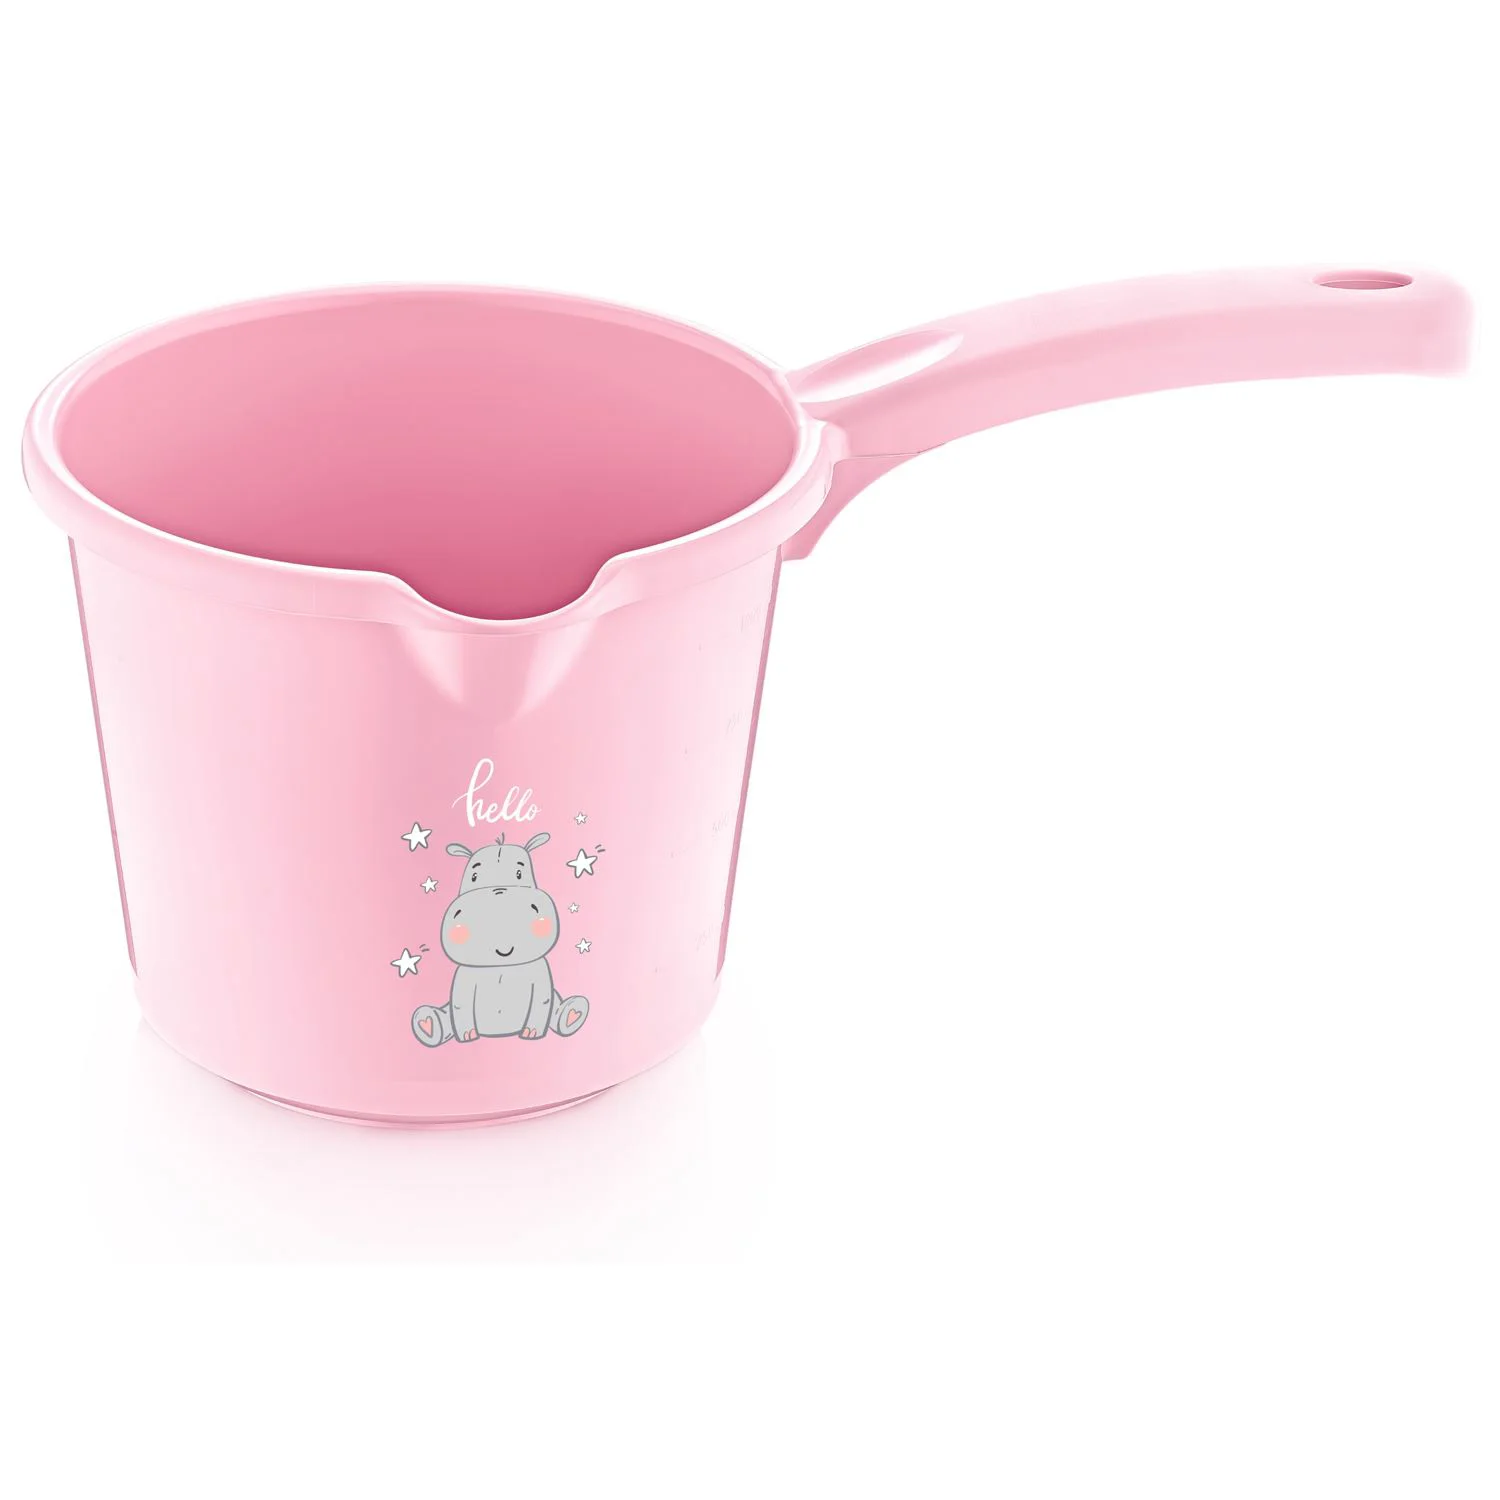 Набор для ванной BabyJem Pink, 5 предметов